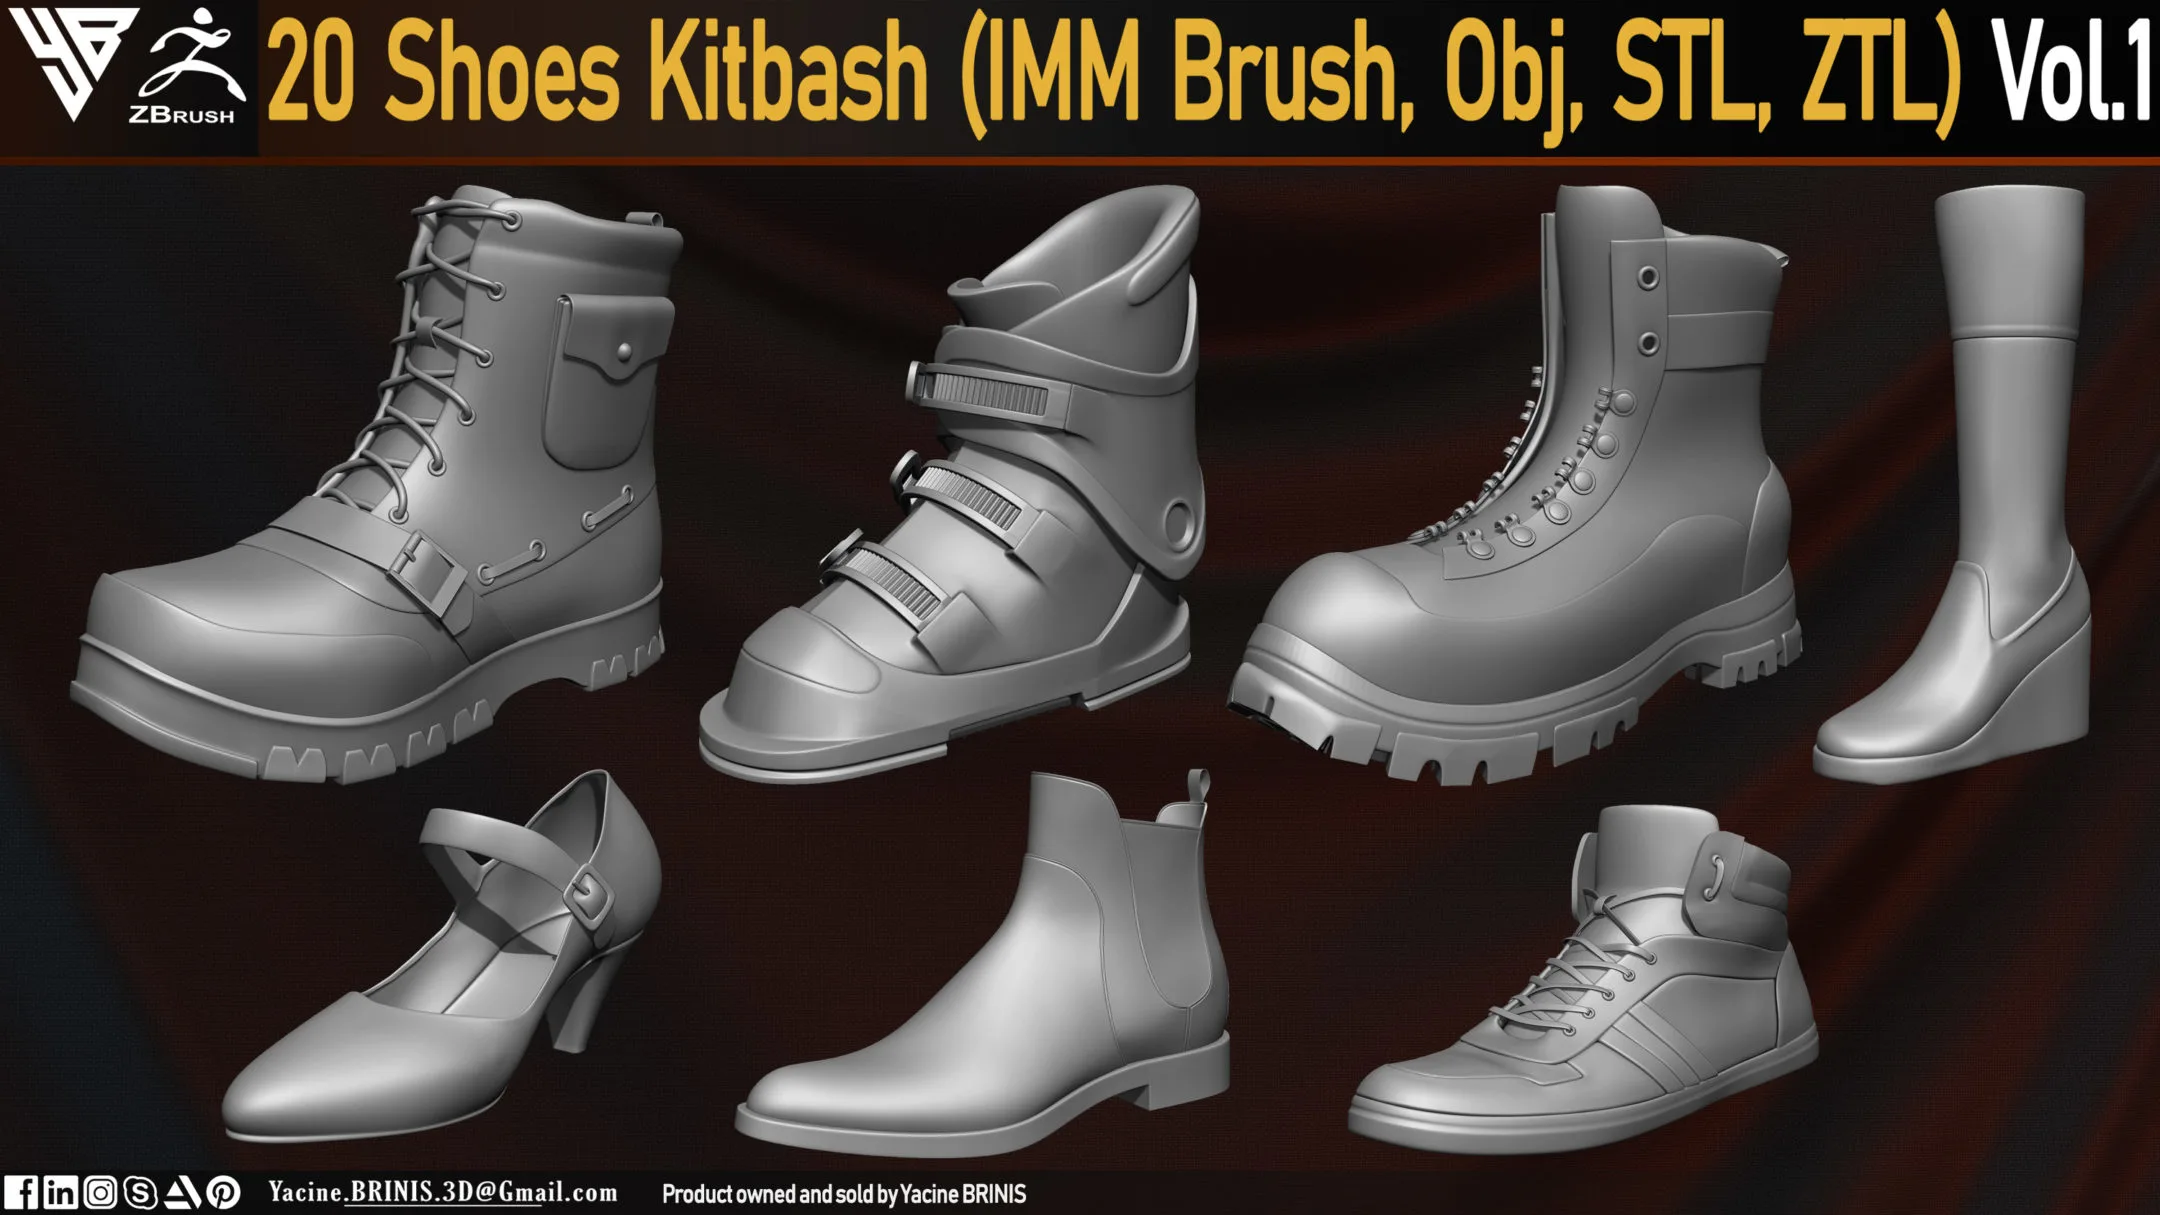 20 Shoes Kitbash (IMM Brush, Obj, STL, ZTL) Vol 01